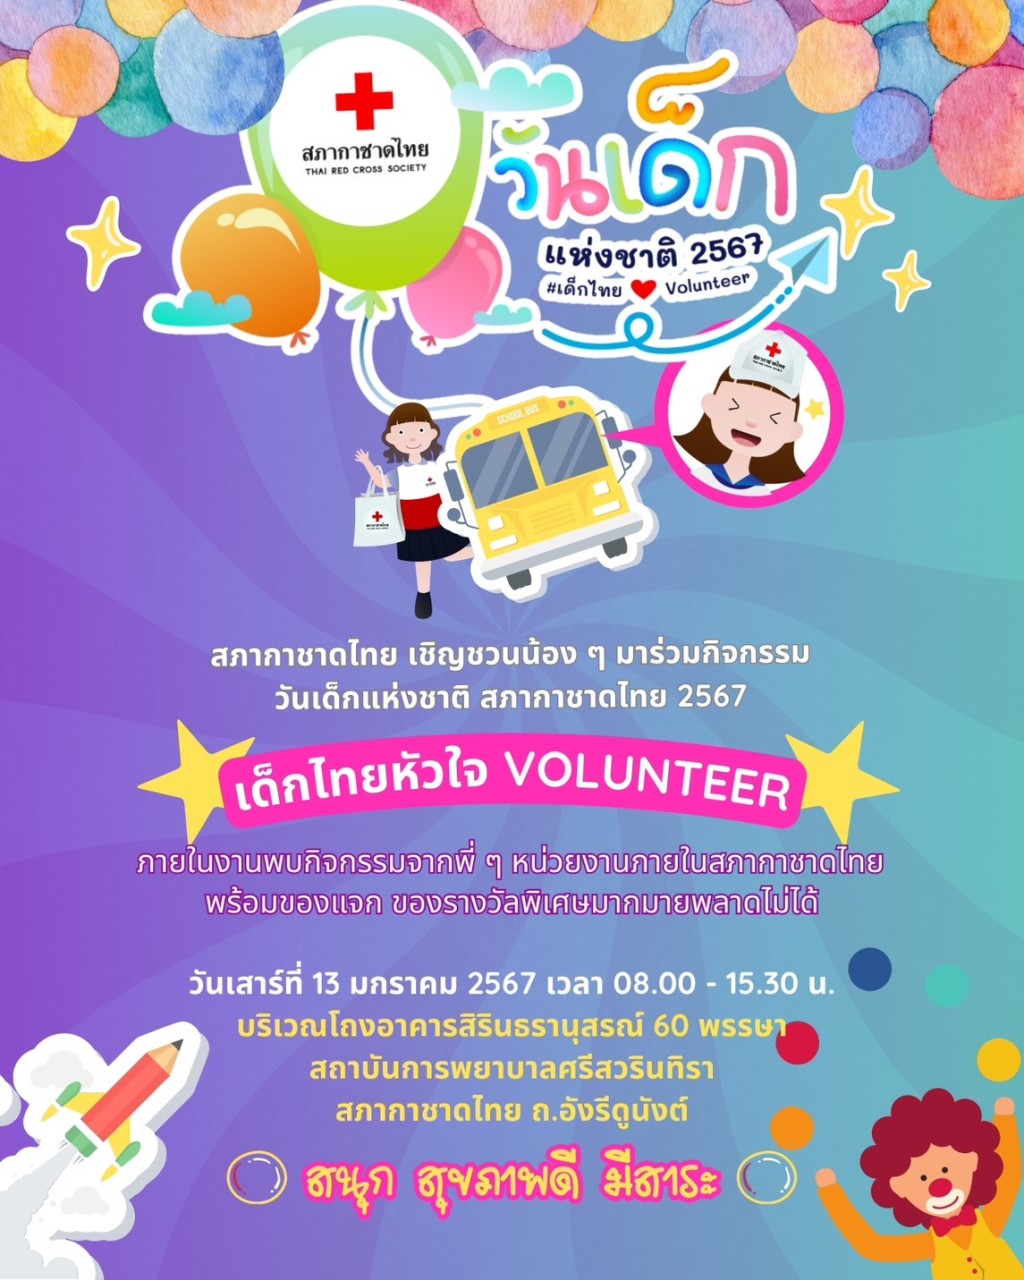 สภากาชาดไทย เชิญชวนน้อง ๆ มาร่วมกิจกรรม #วันเด็กแห่งชาติ สภากาชาดไทย 2567